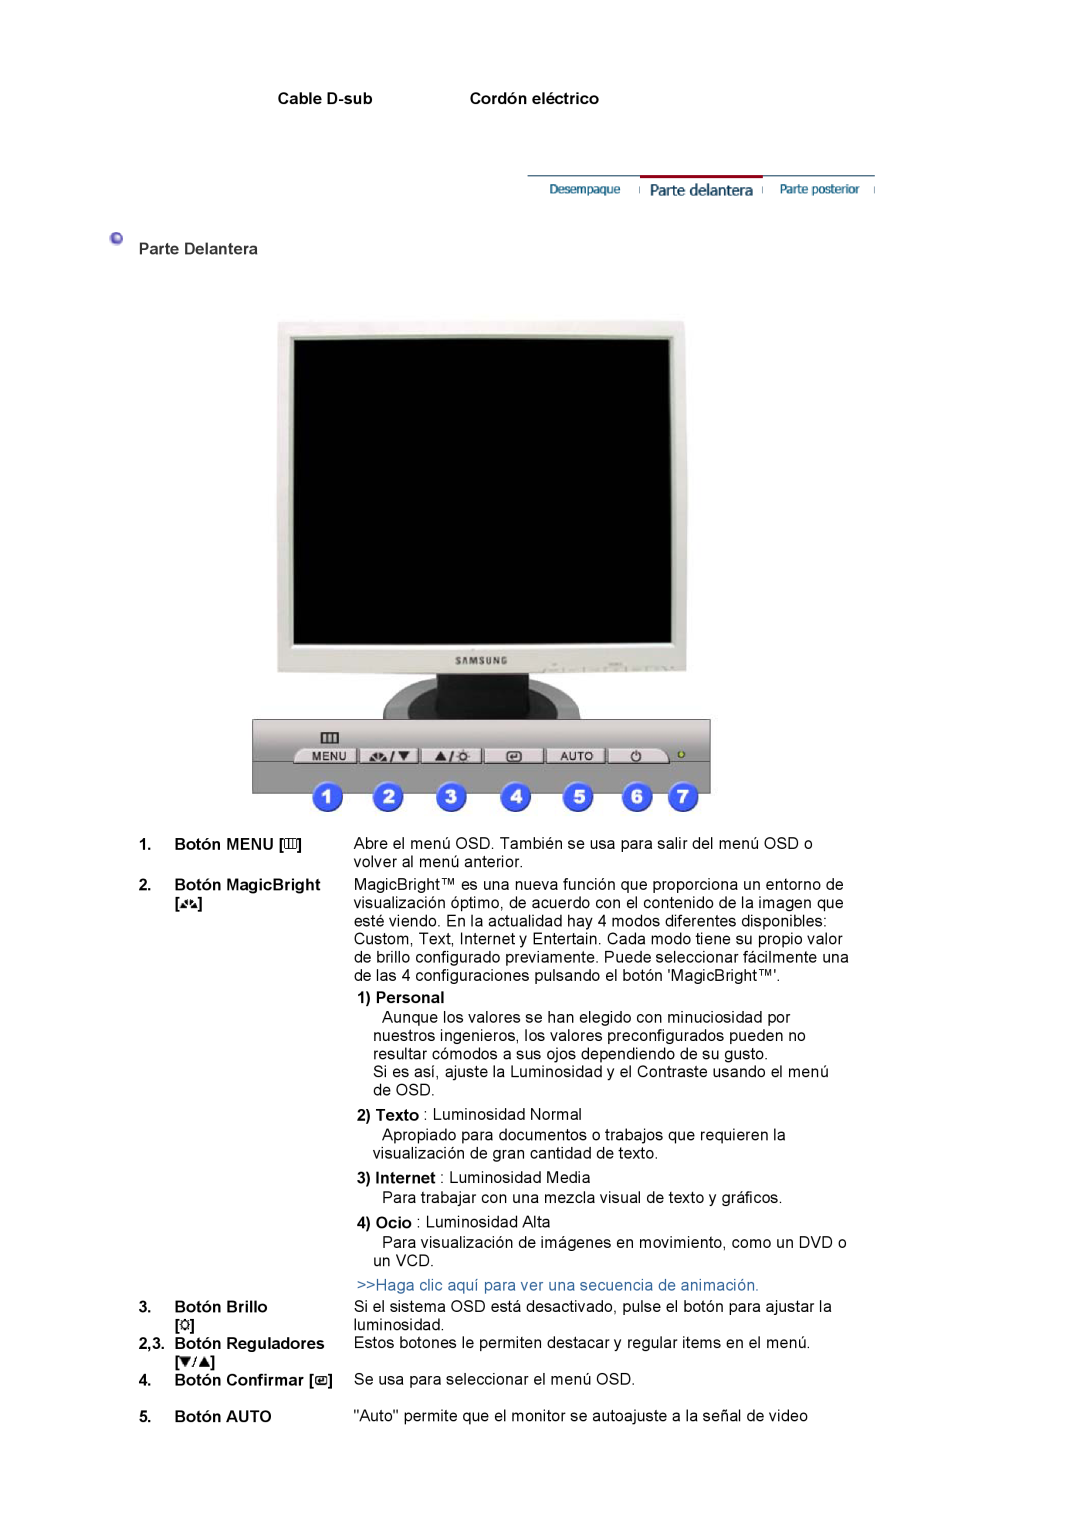 Samsung LS17MJVKS/EDC manual Parte Delantera, Haga clic aquí para ver una secuencia de animación, Cable D-sub 